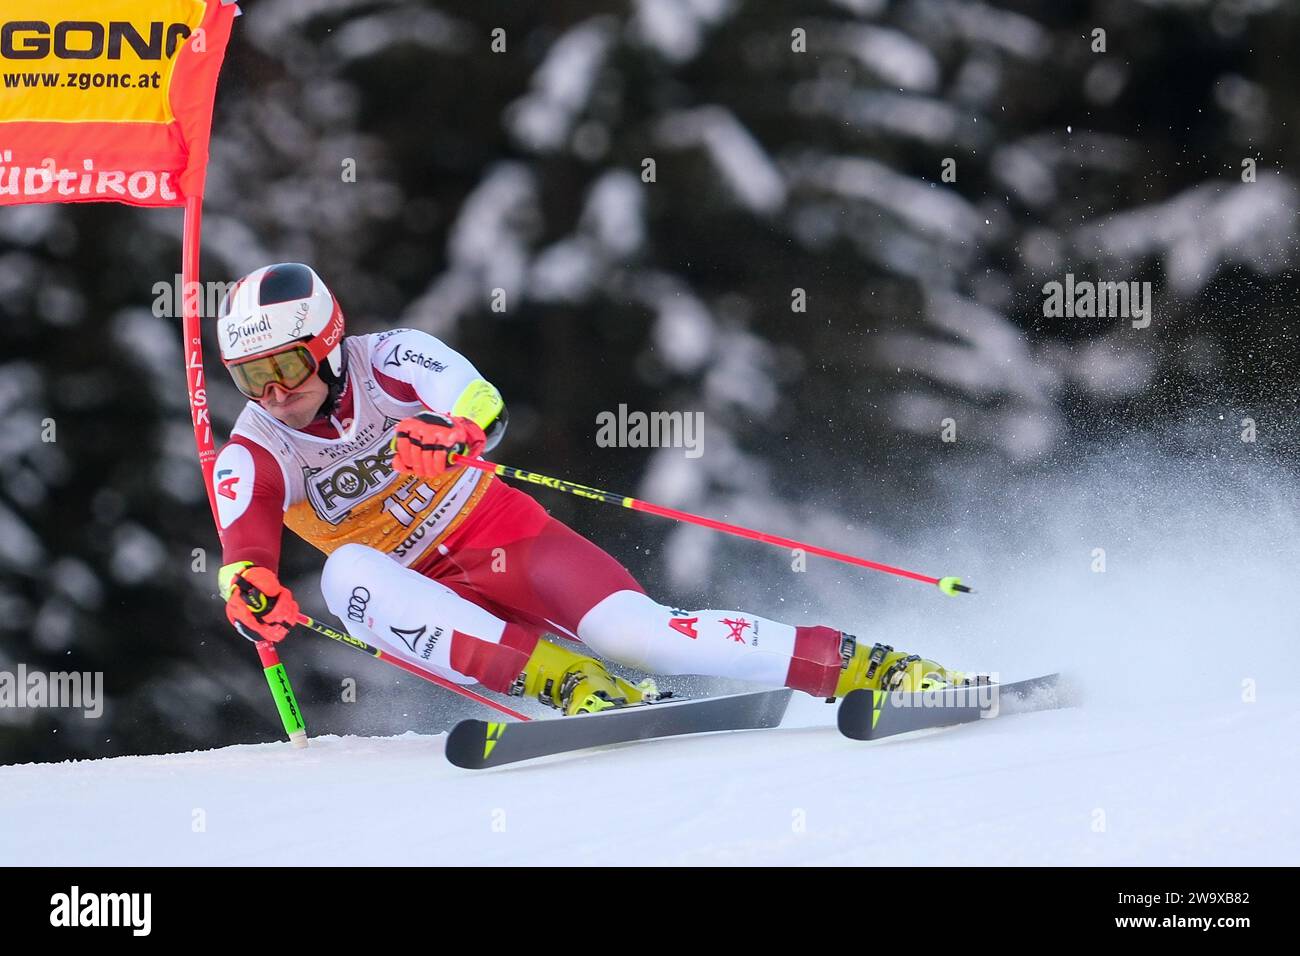 Stefan Brennsteiner (AUT) gareggia durante la Coppa del mondo di sci alpino Audi FIS, MenÕs Giant Slalom gara sulla pista Gran Risa, alta Badia il 17 dicembre 20 Foto Stock